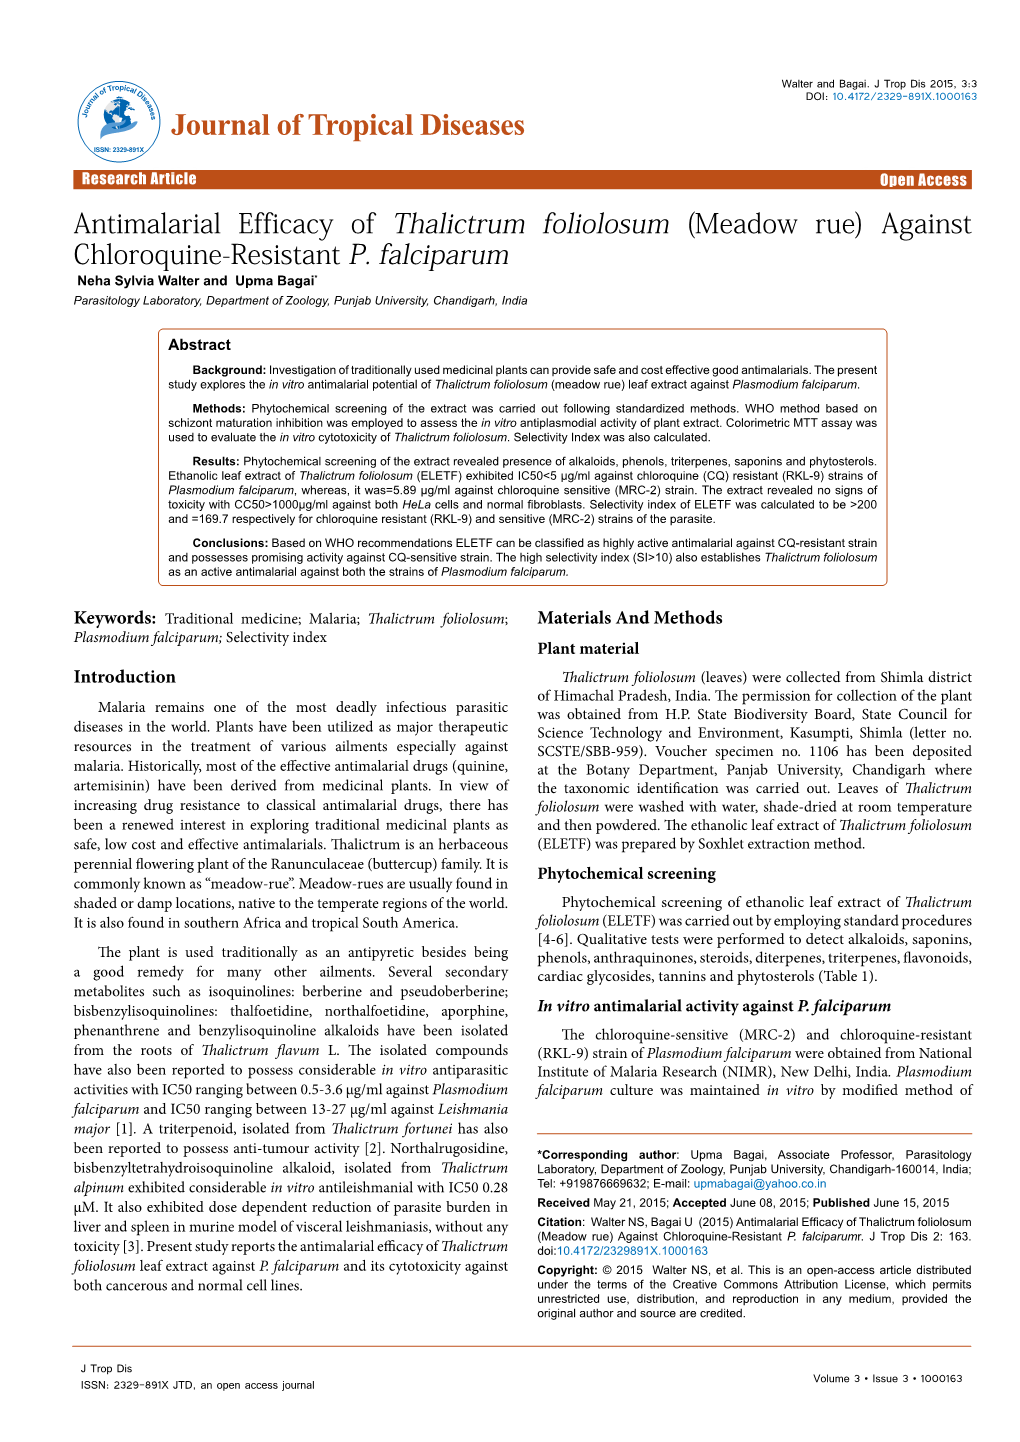 Antimalarial Efficacy of Thalictrum Foliolosum (Meadow Rue) Against Chloroquine-Resistant P. Falciparum